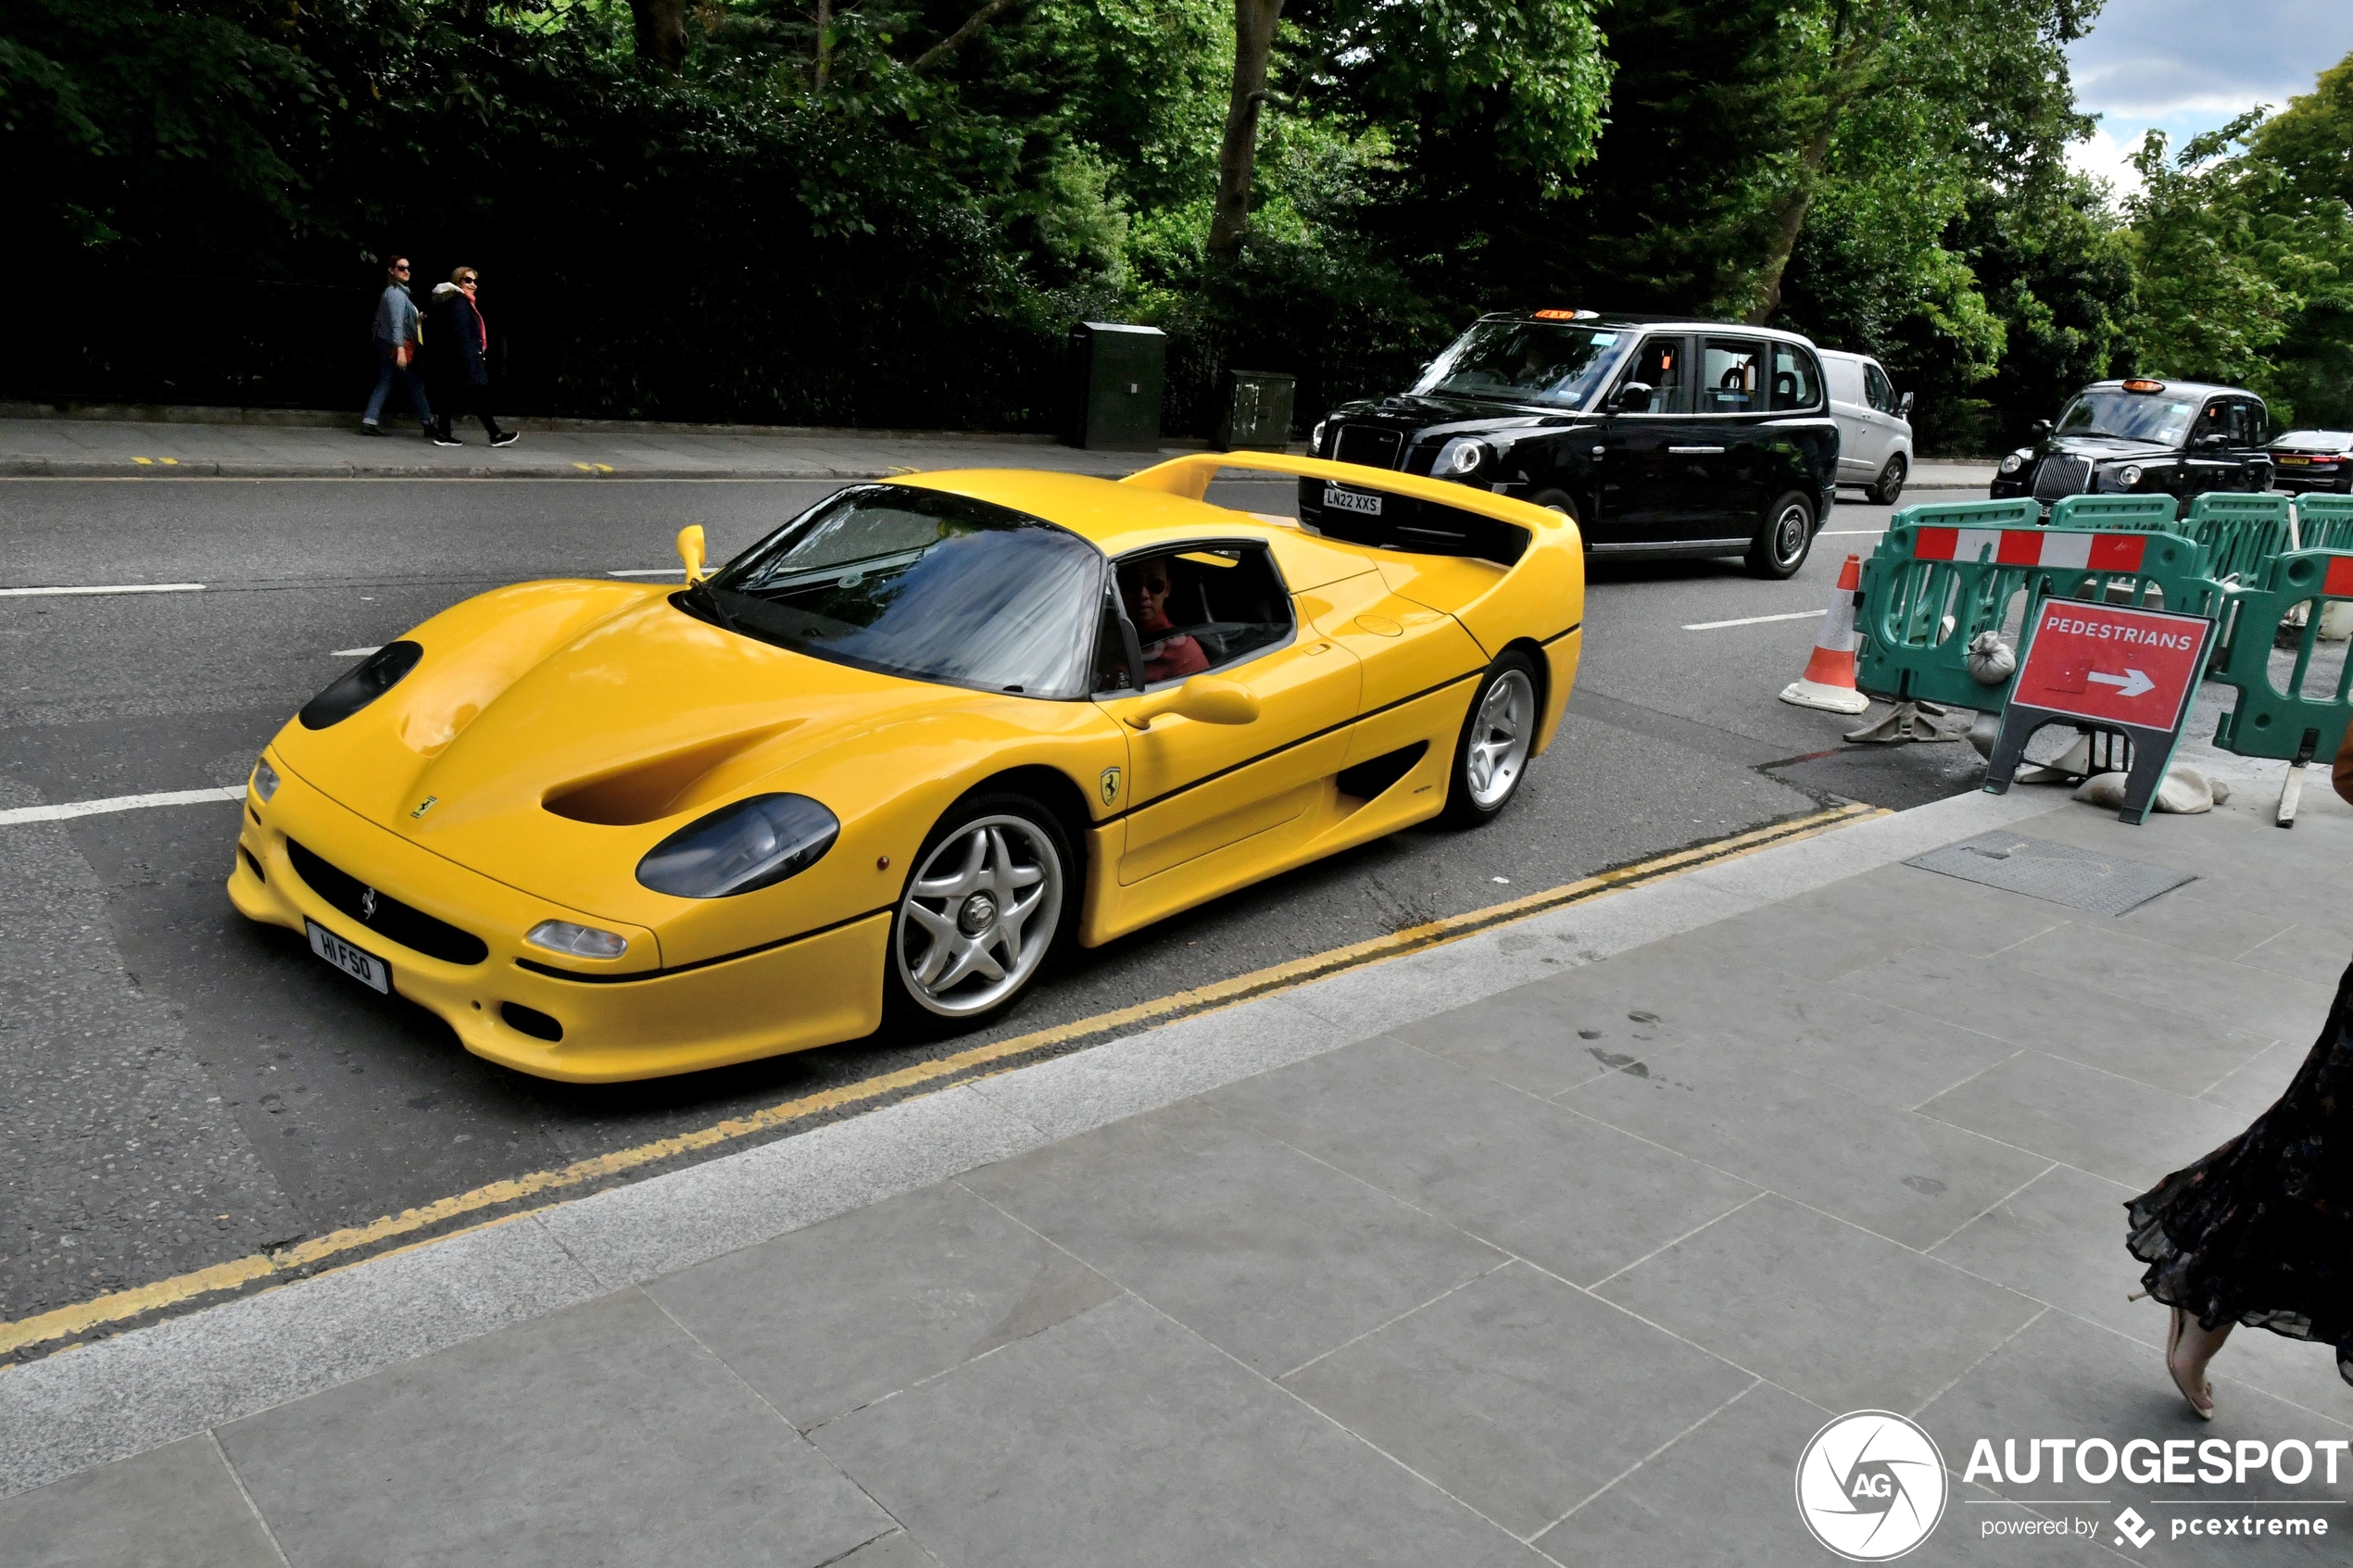 Gele Ferrari F50 is onverwachte gast in Londen